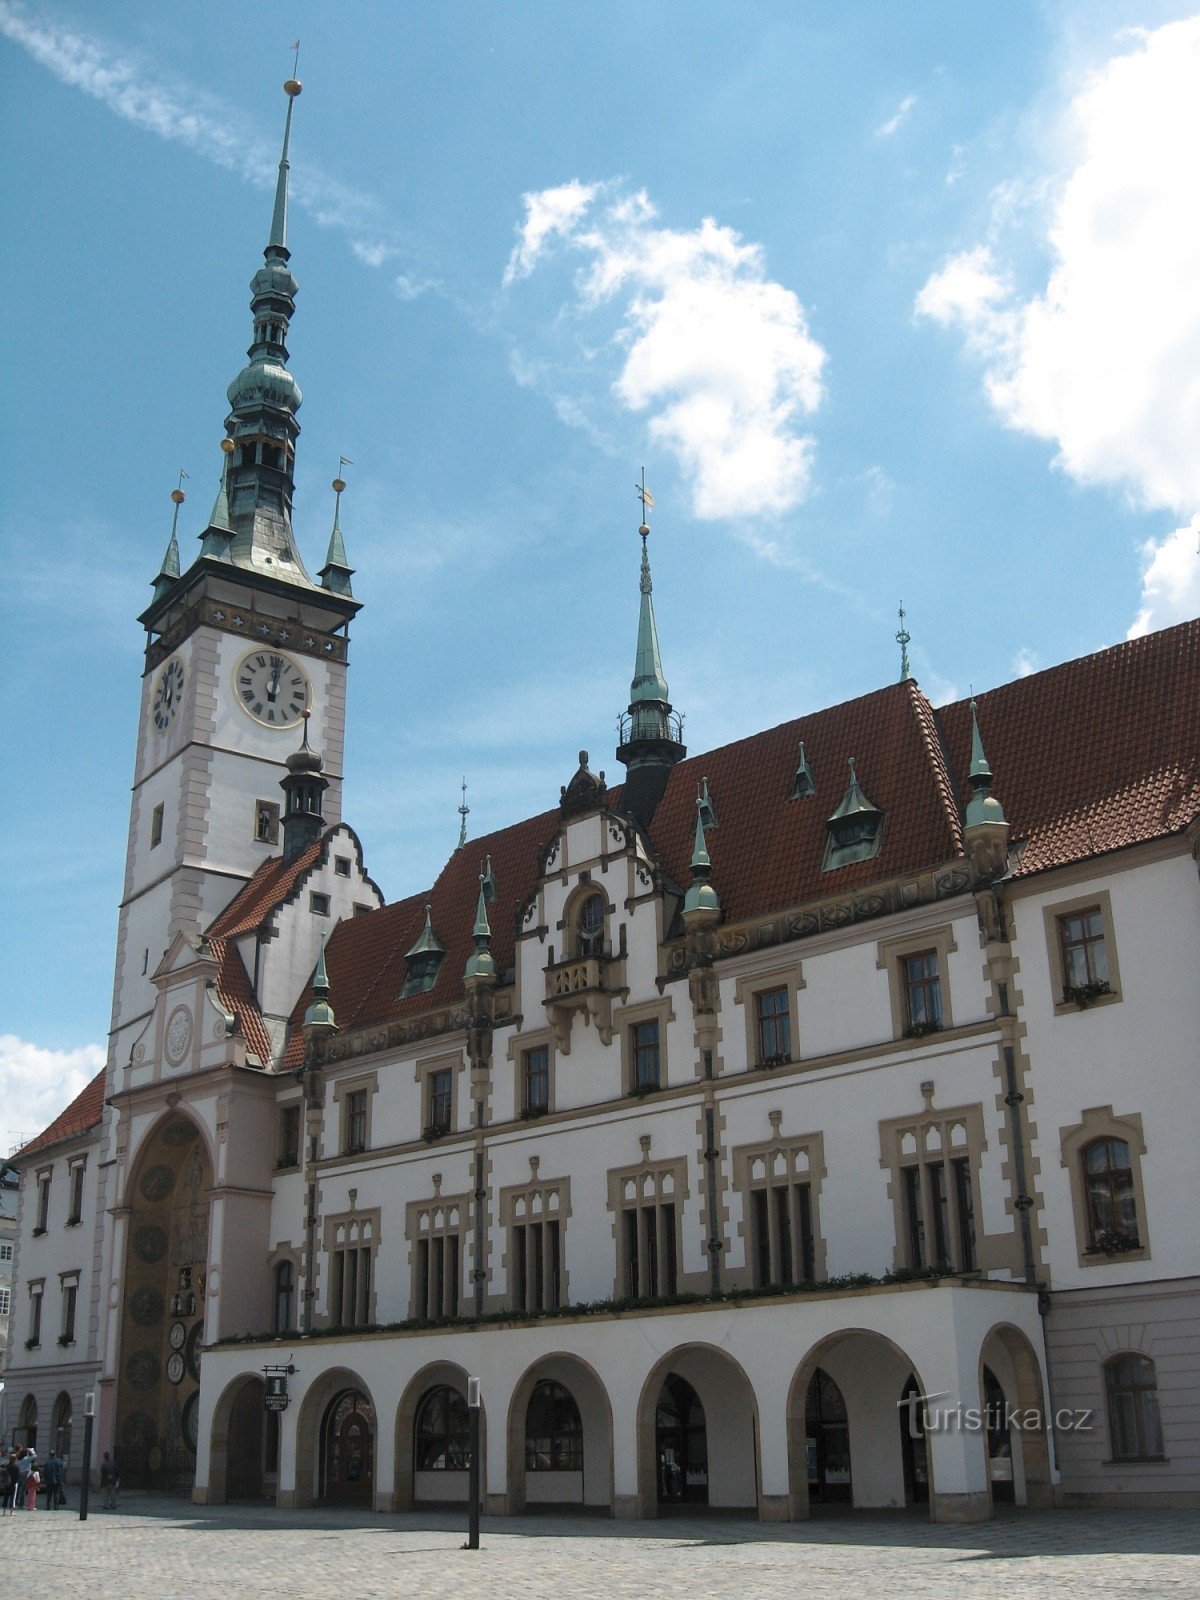 Achter de geschiedenis en schoonheid van de stad Olomouc